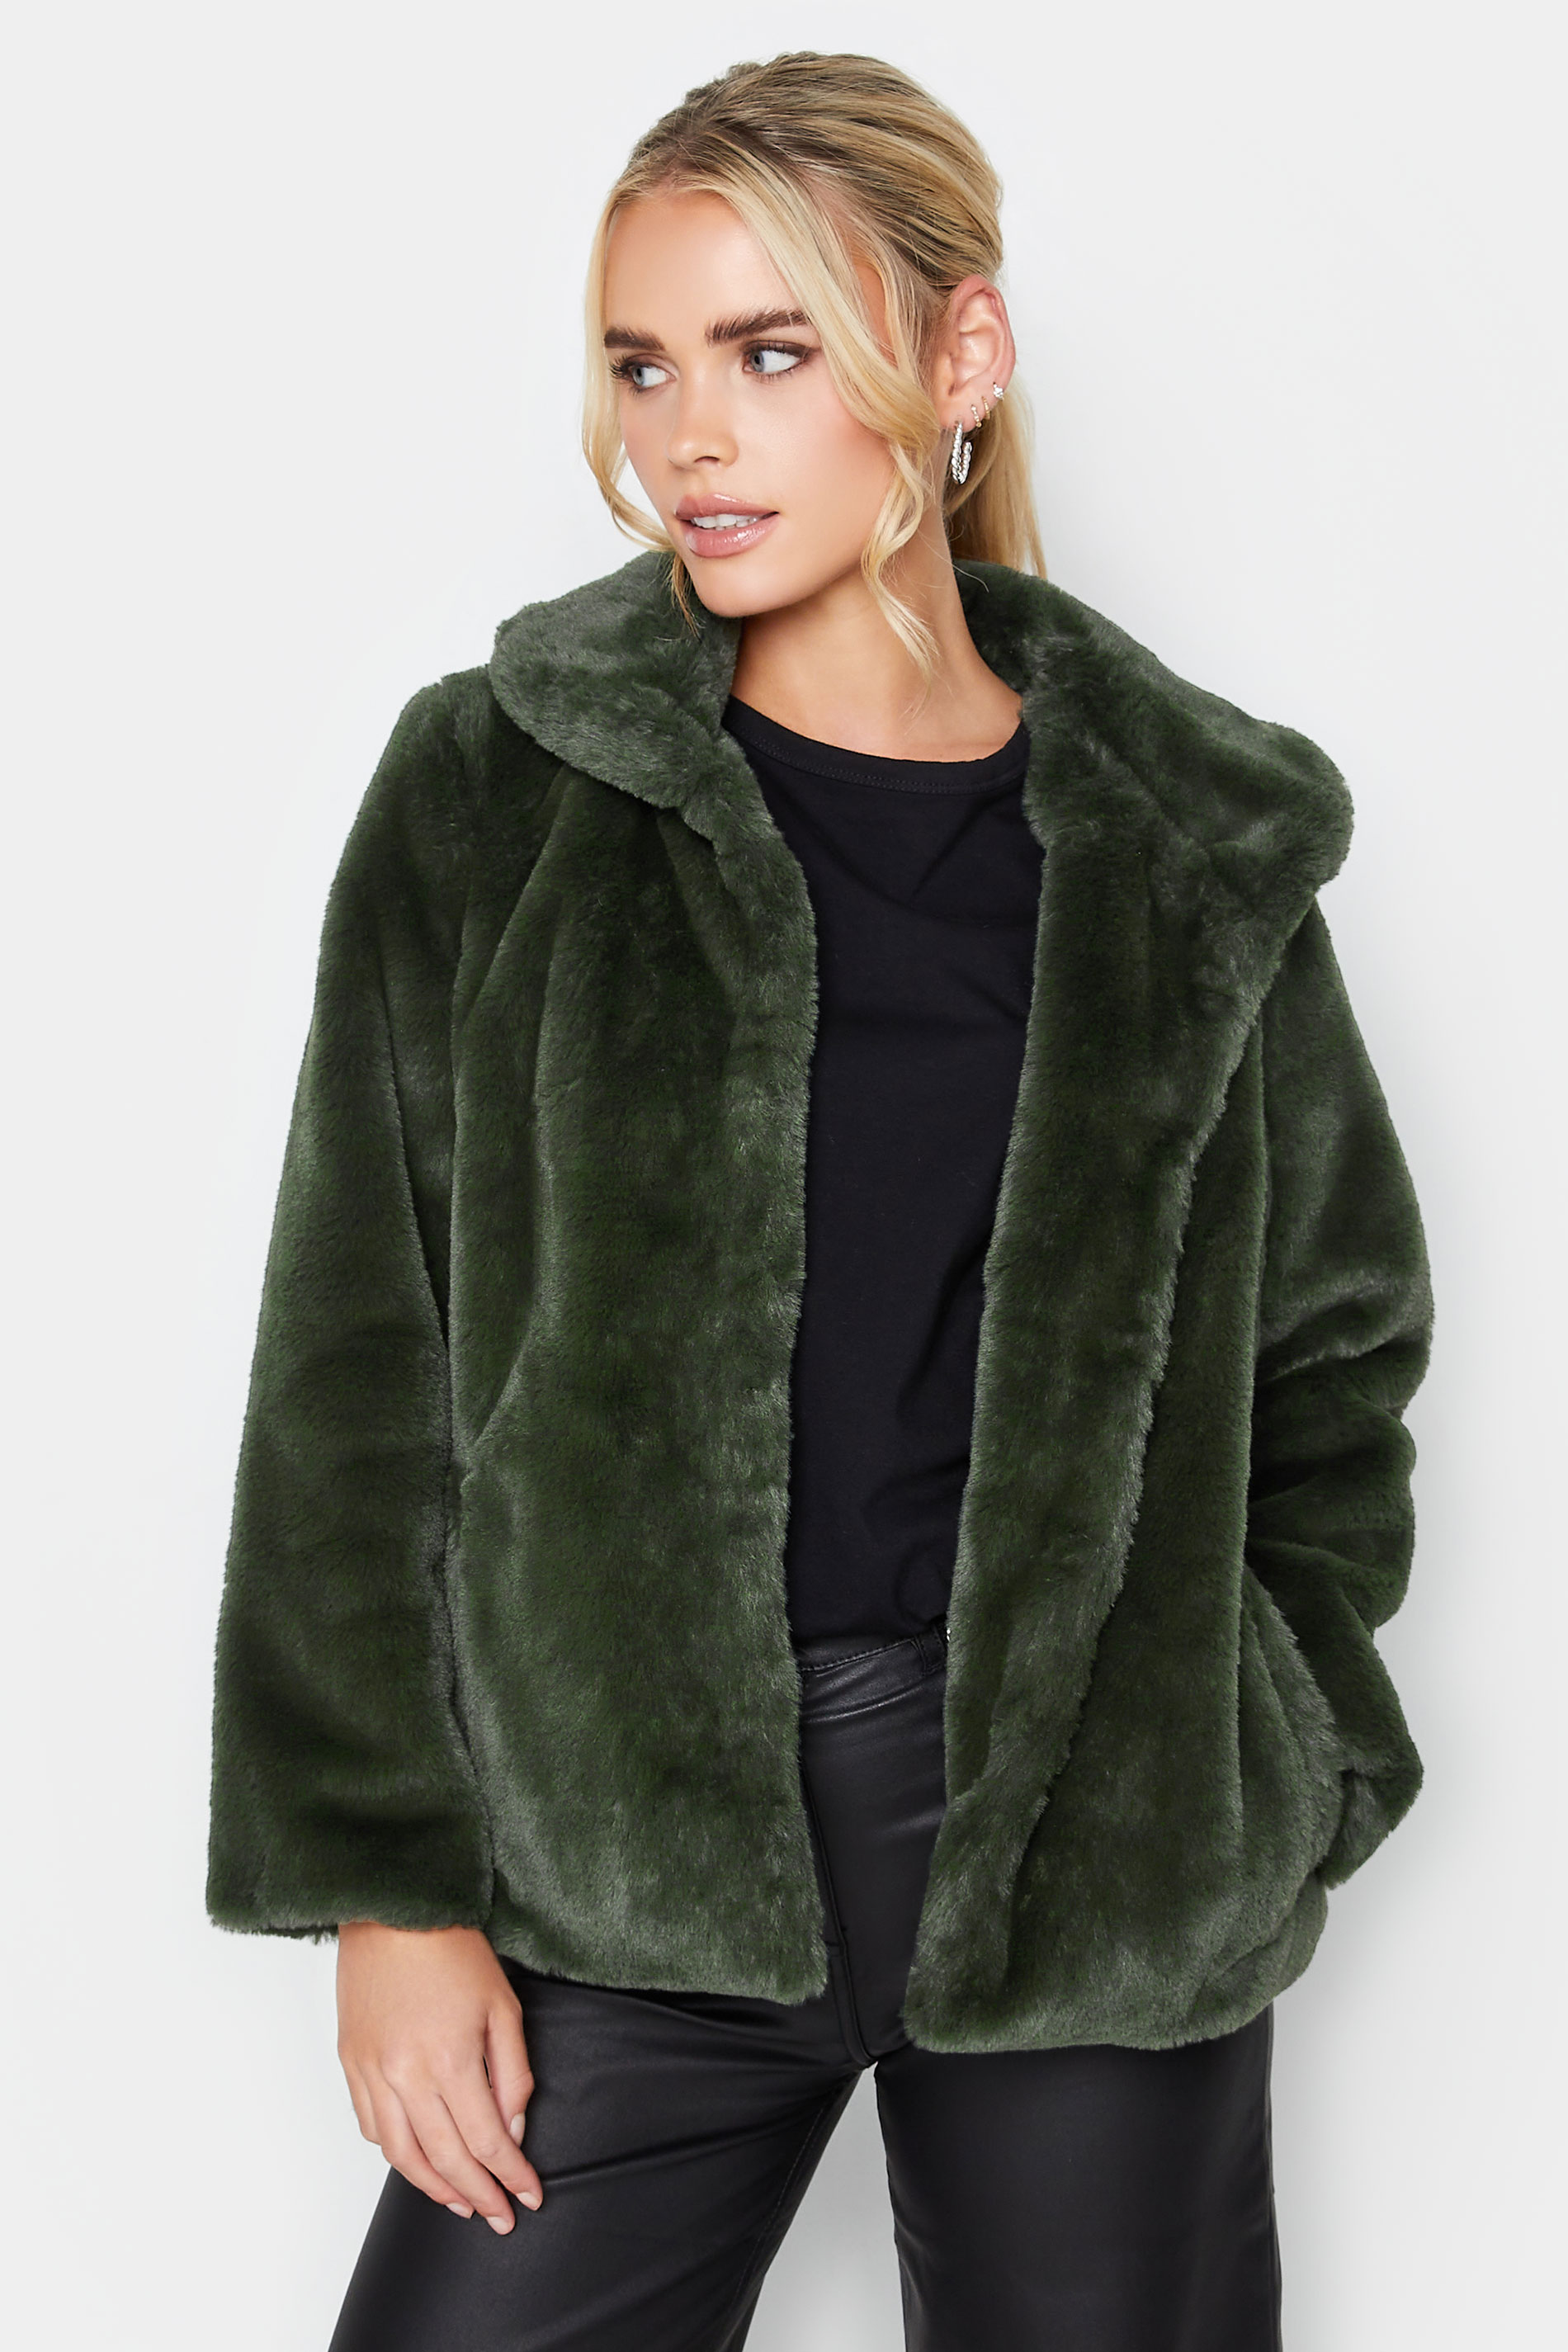 PixieGirl Dark Green Faux Fur Coat | PixieGirl 1